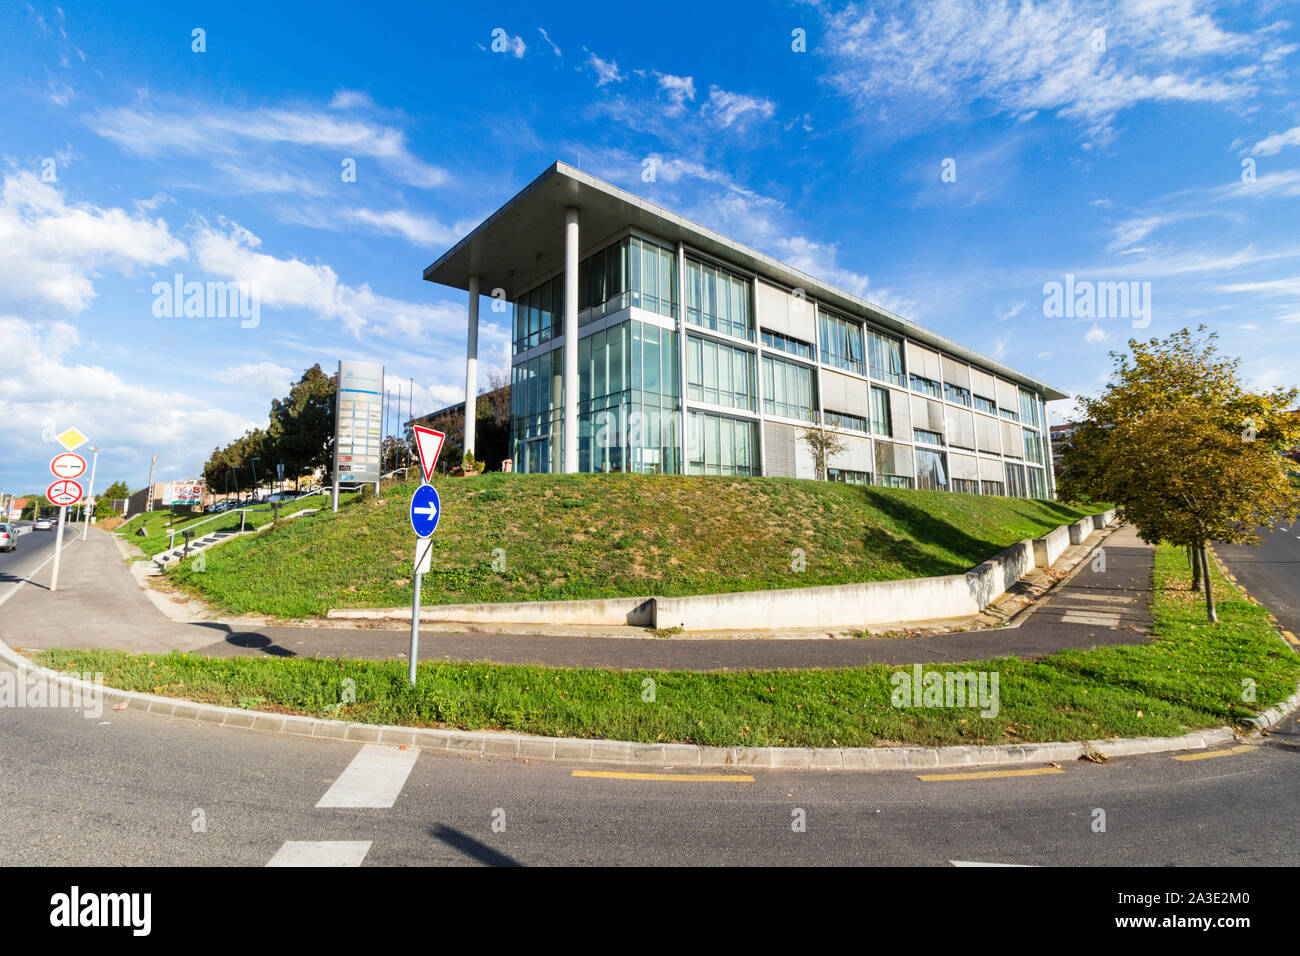 Soproni Innovációs Központ (Sopron Innovation Centre), Inkubátorház, office building, Sopron, Hungary Stock Photo